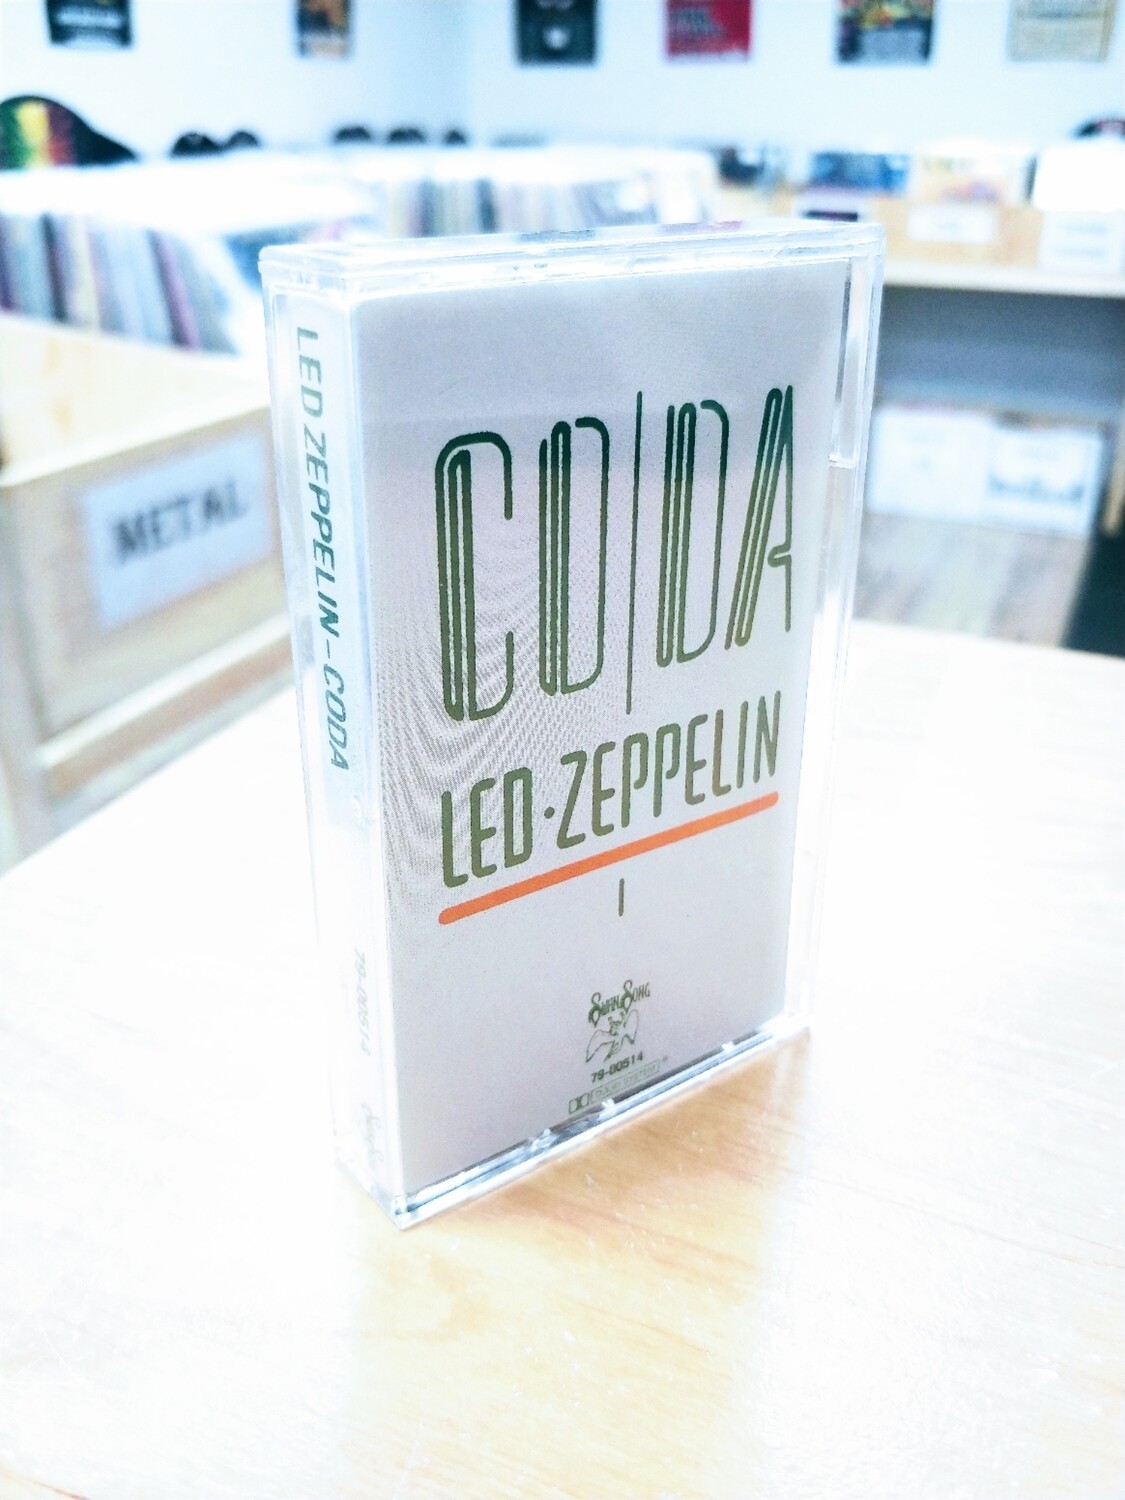 Led Zeppelin - Coda (CASSETTE)